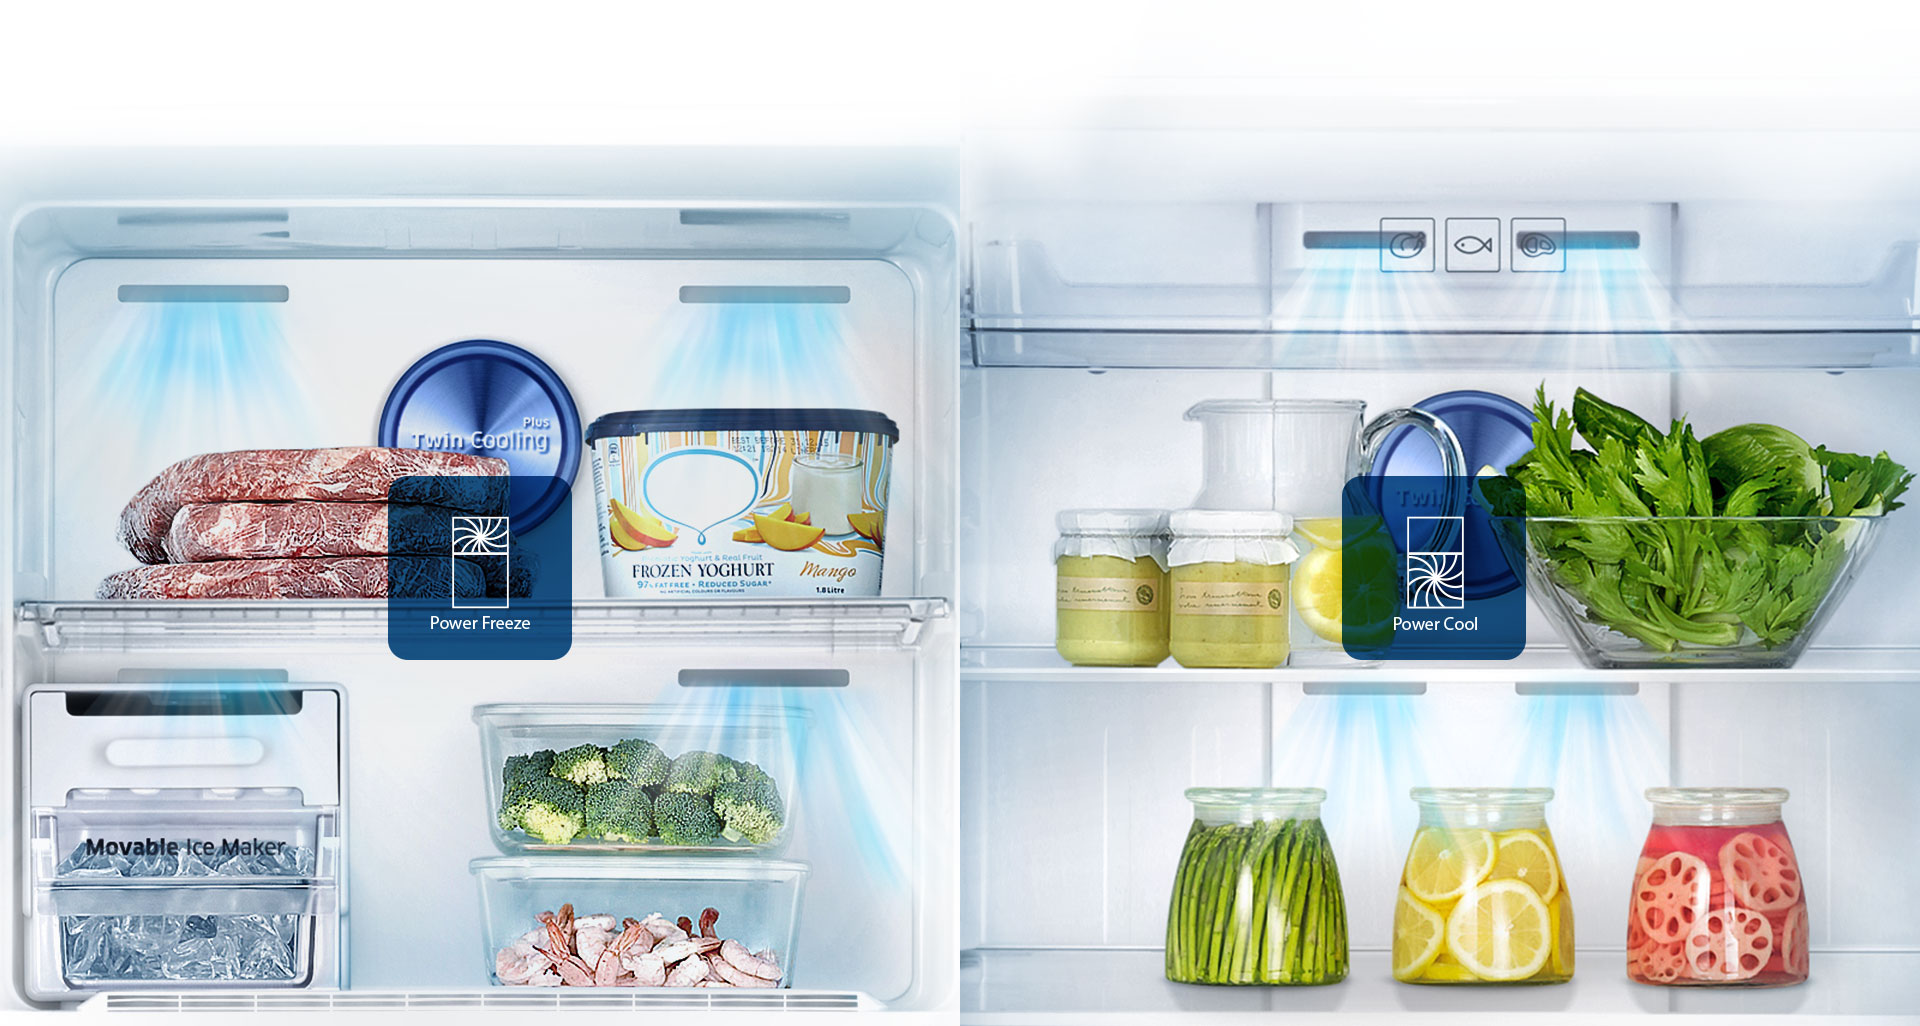 Réfrigérateur Samsung Twin Cooling Plus 440L avec Afficheur